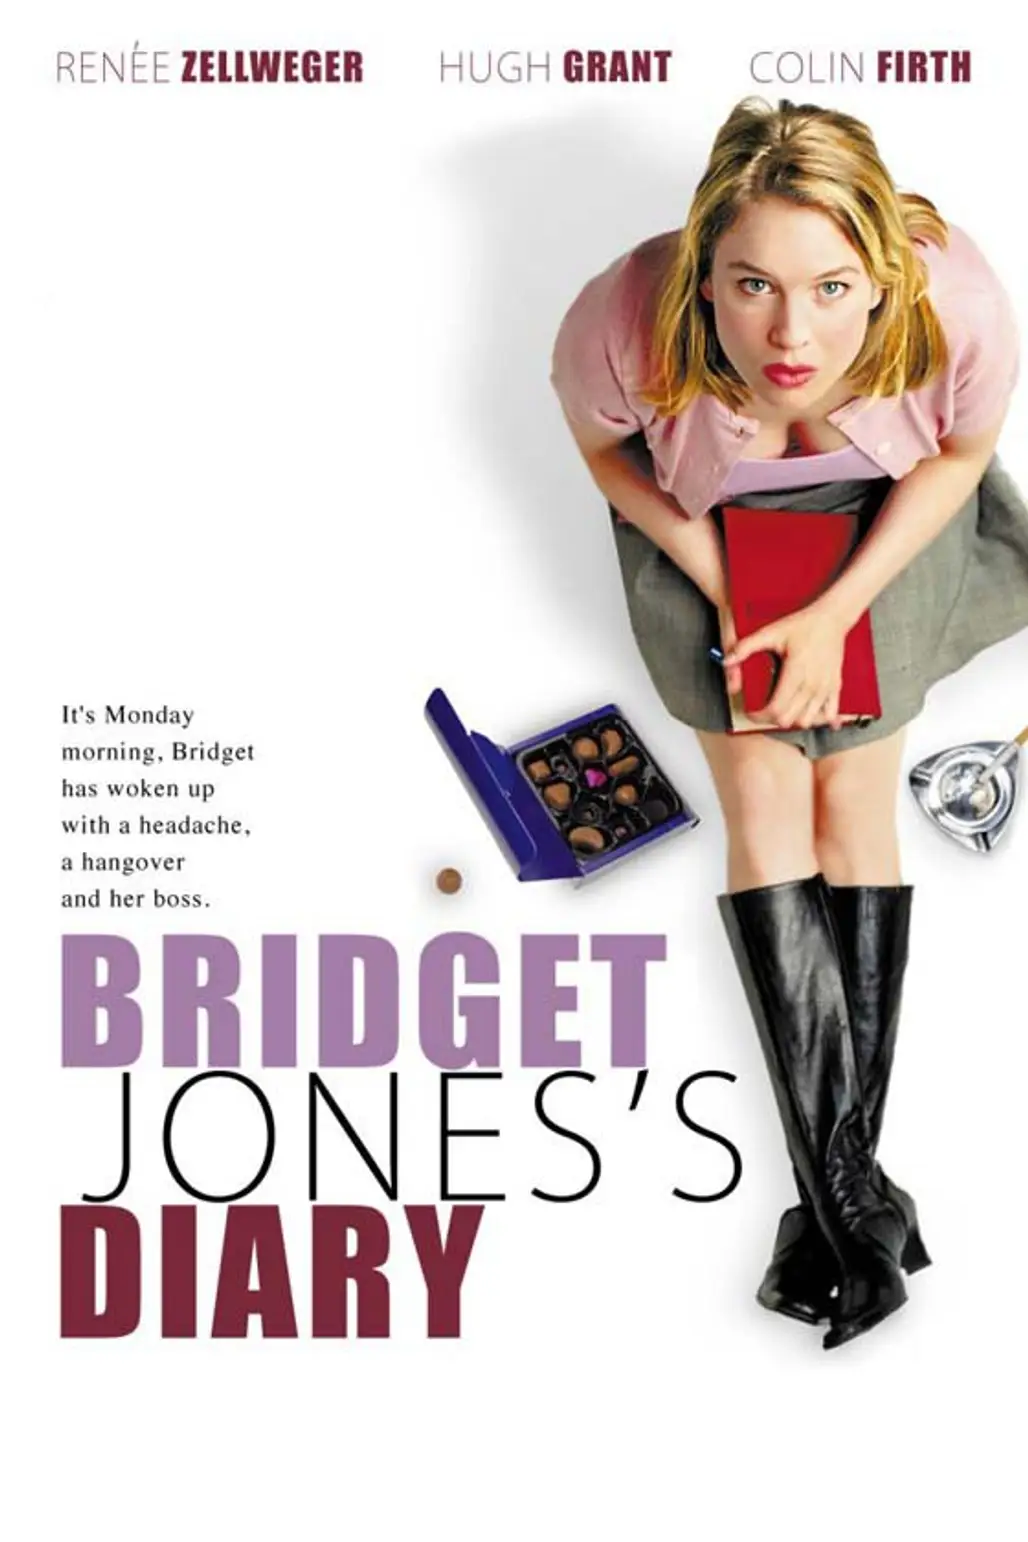 Bridget Jones's Diary (2001)